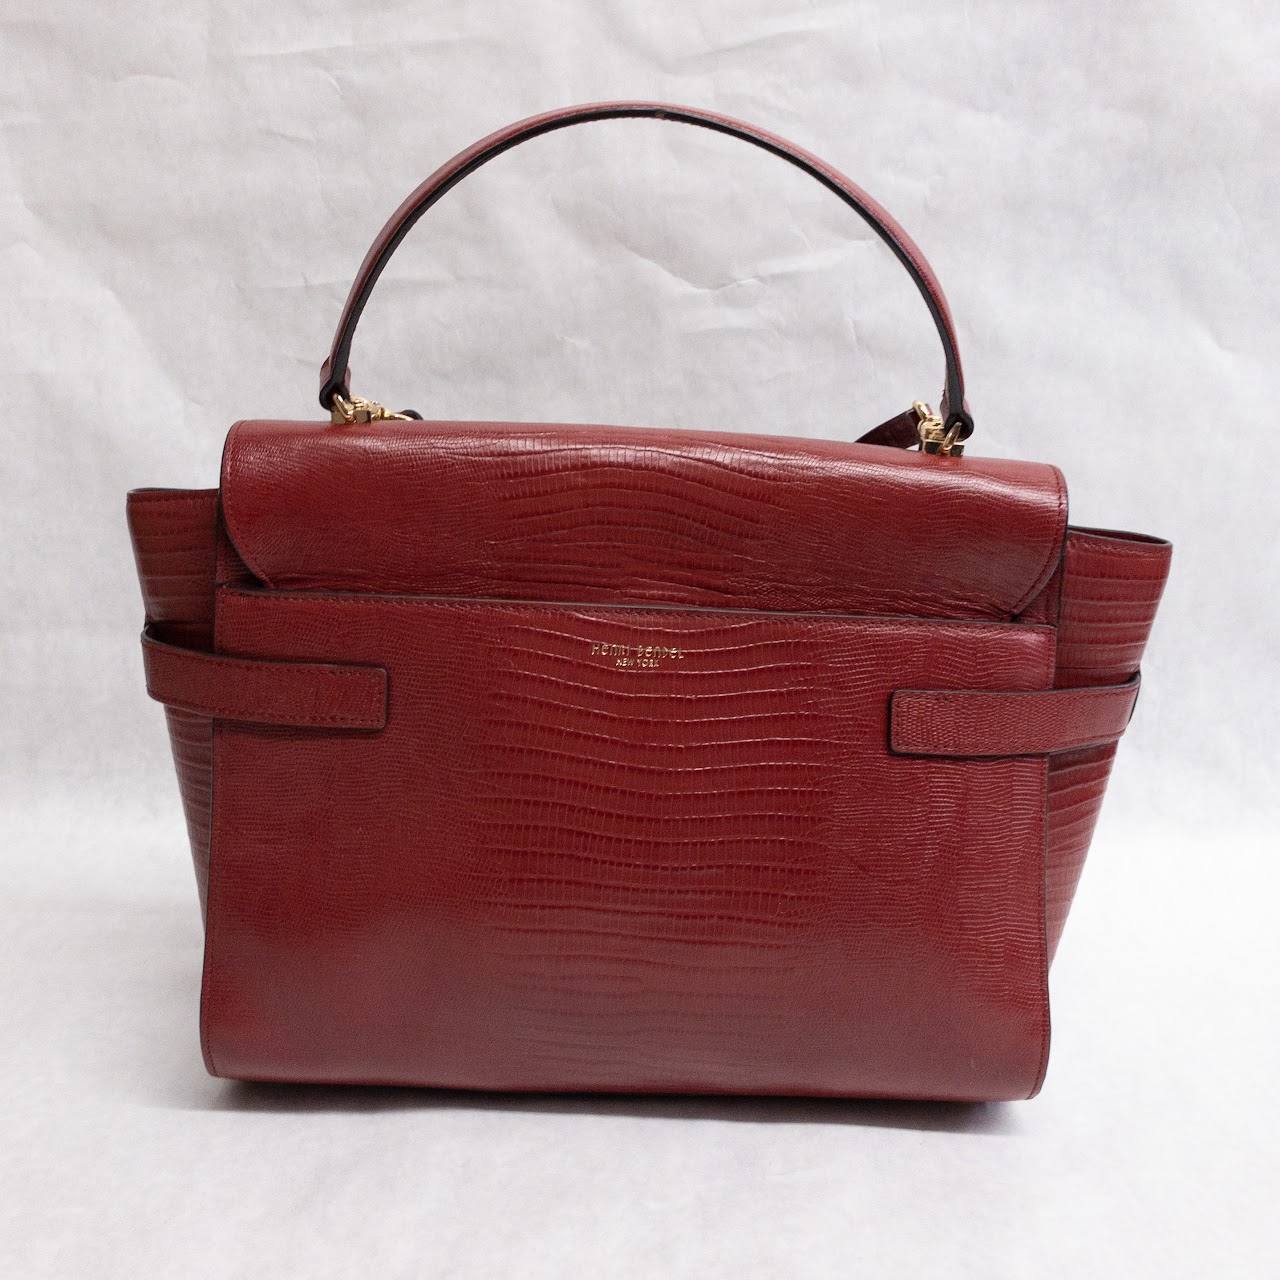 Henri Bendel Red Leather Bag